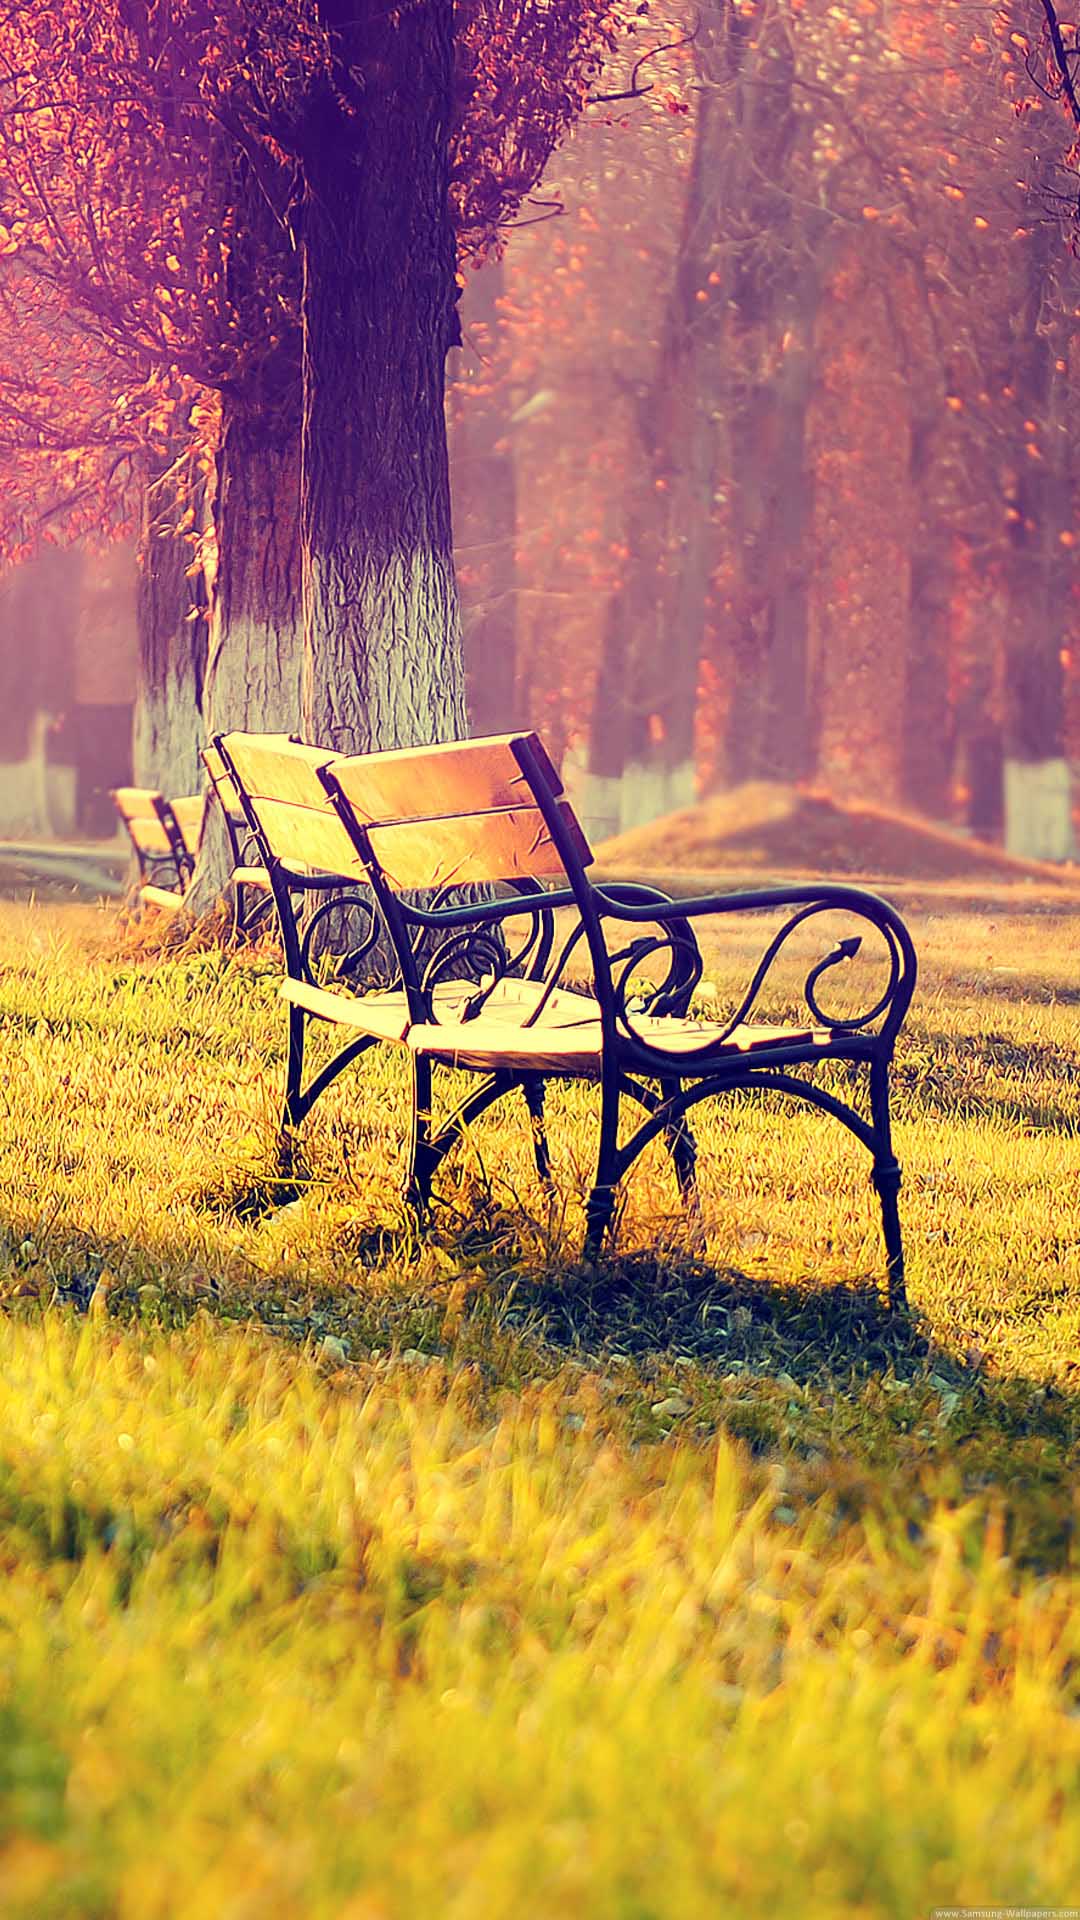 Autumn park bench